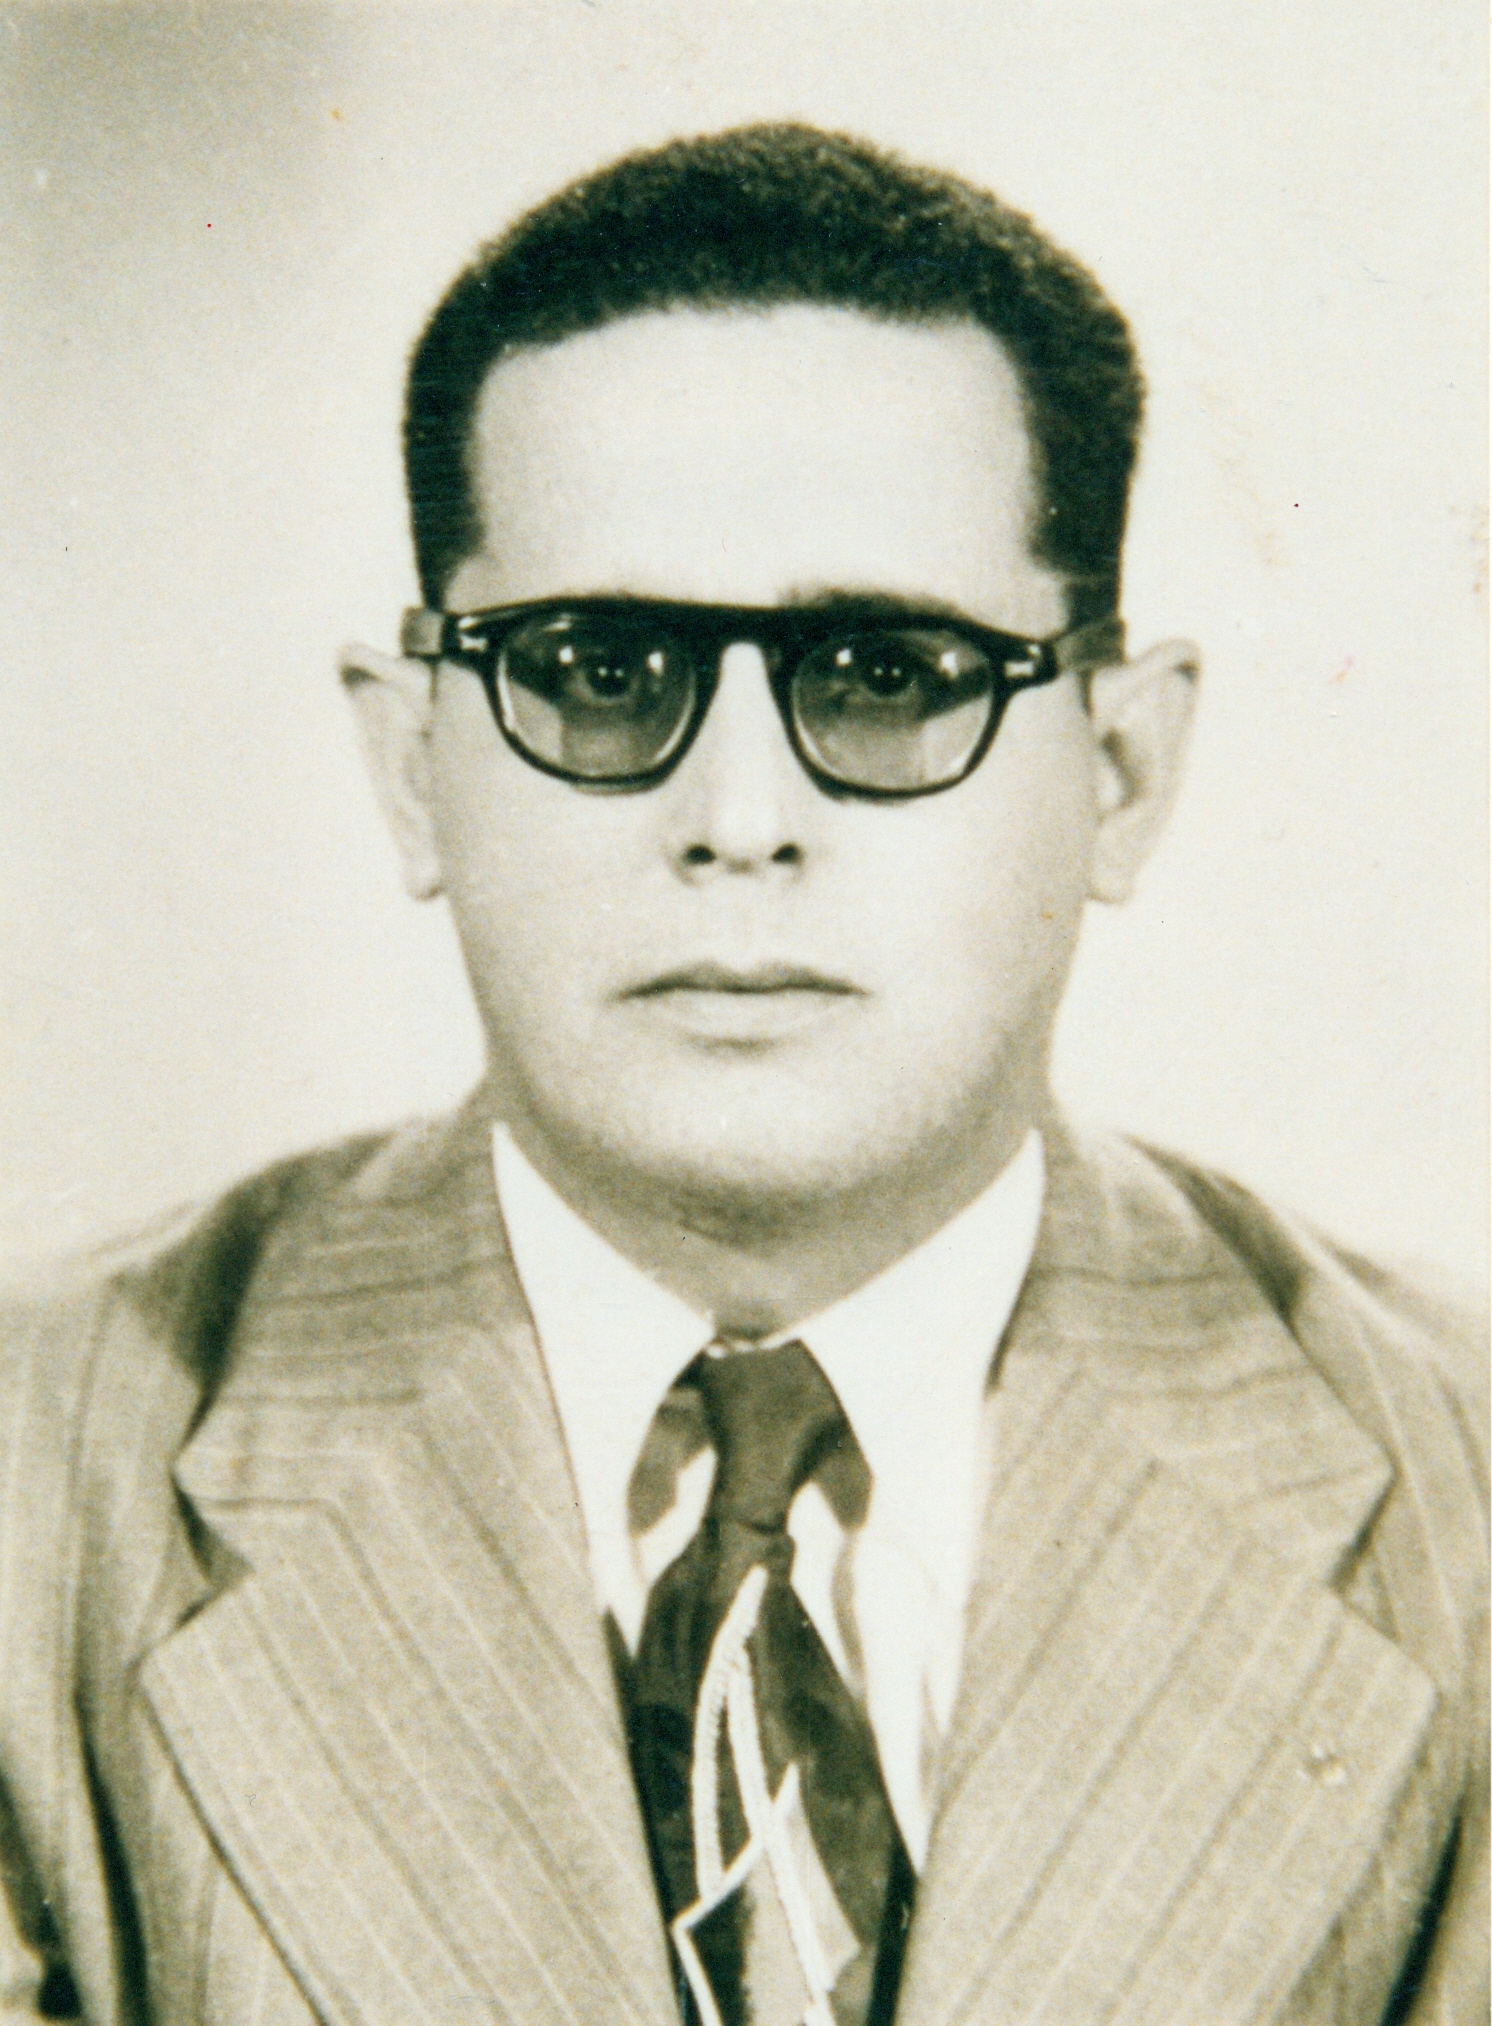 Eduardo Alejandro Jose Irueta Guerra, Cuba 1954